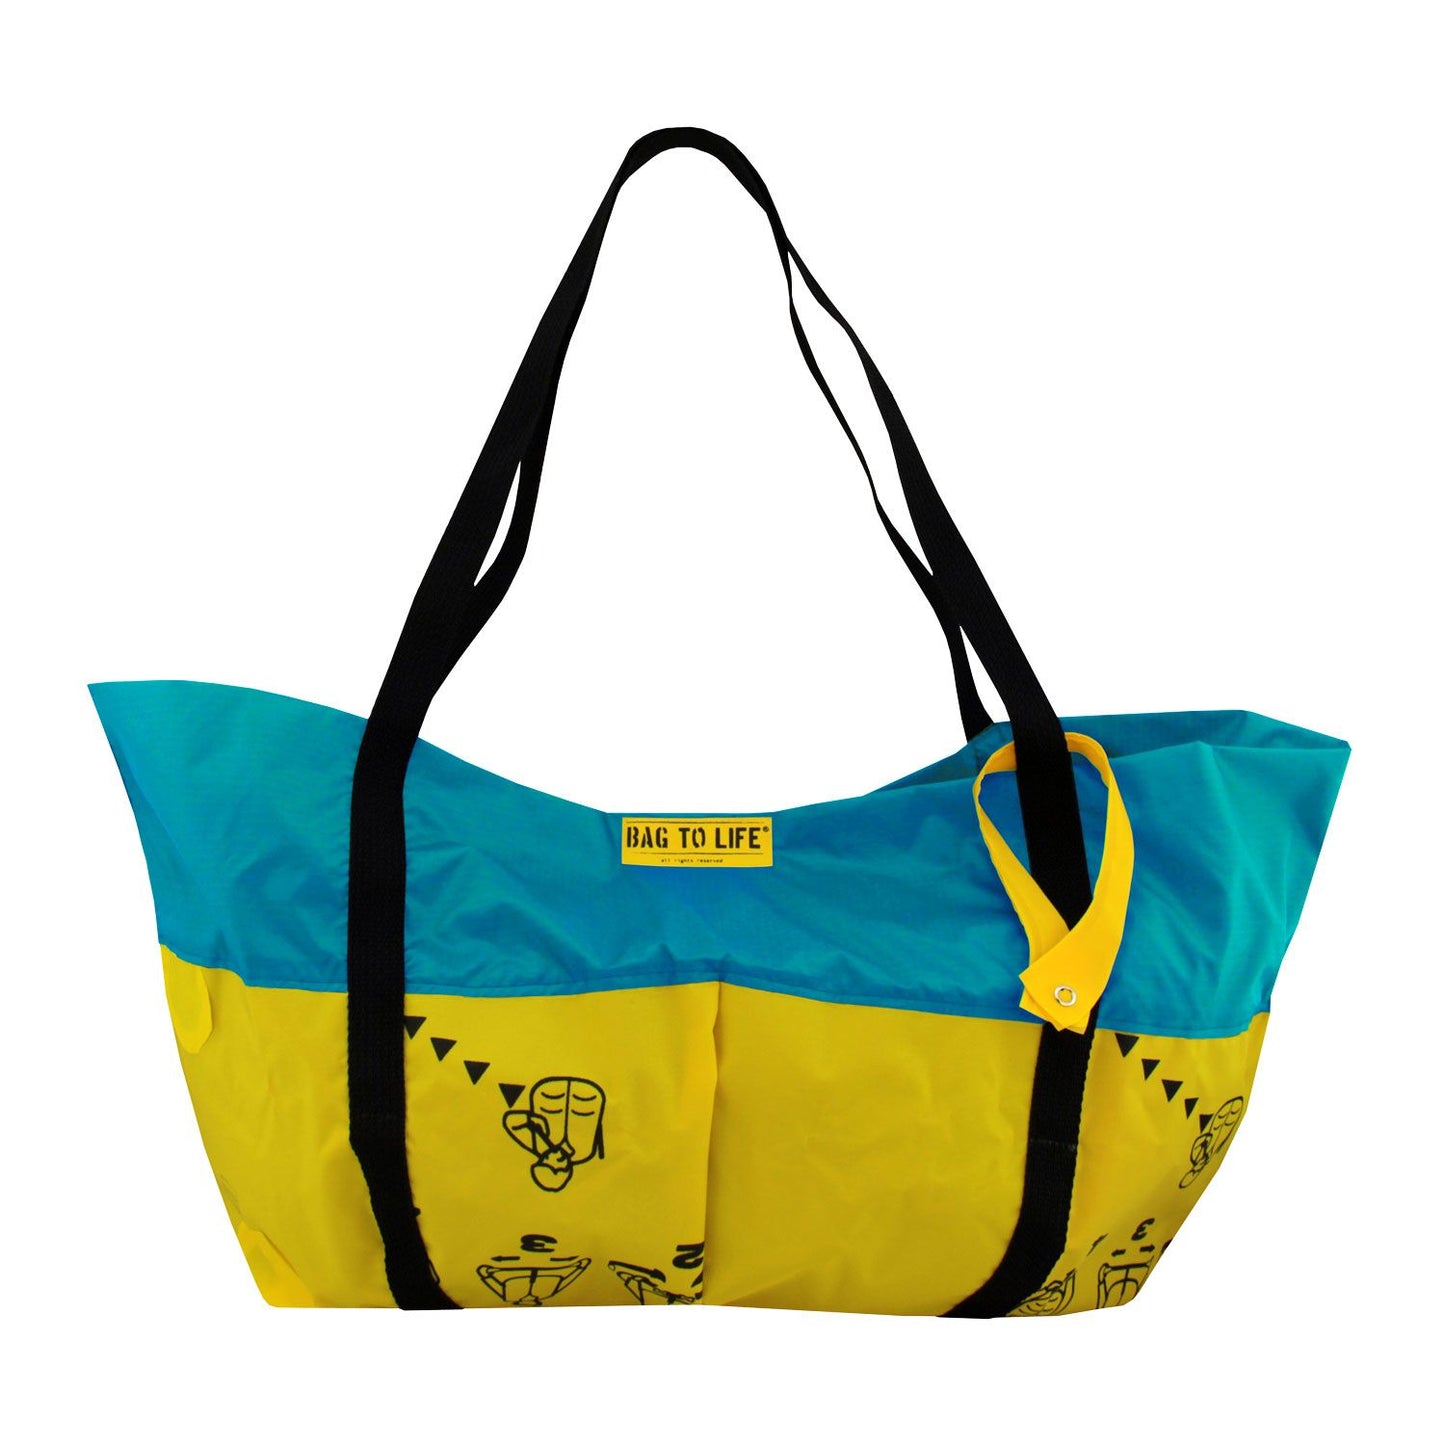 B2L Airlie Beach Bag - Strandtasche